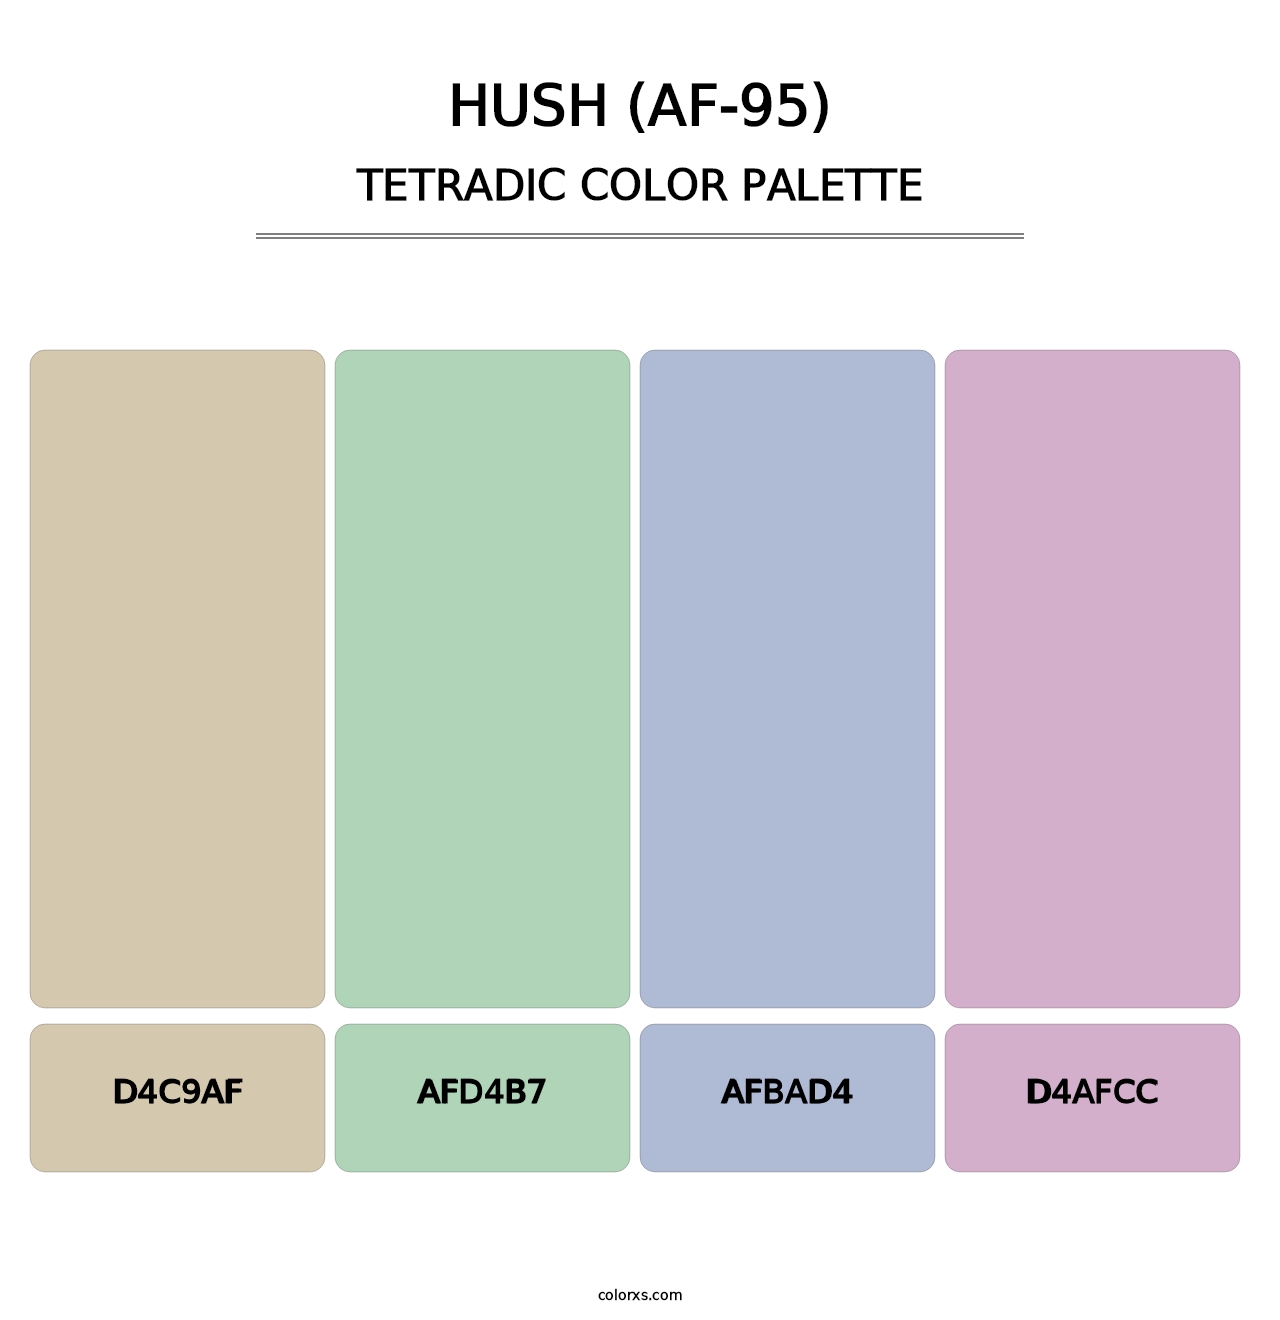 Hush (AF-95) - Tetradic Color Palette